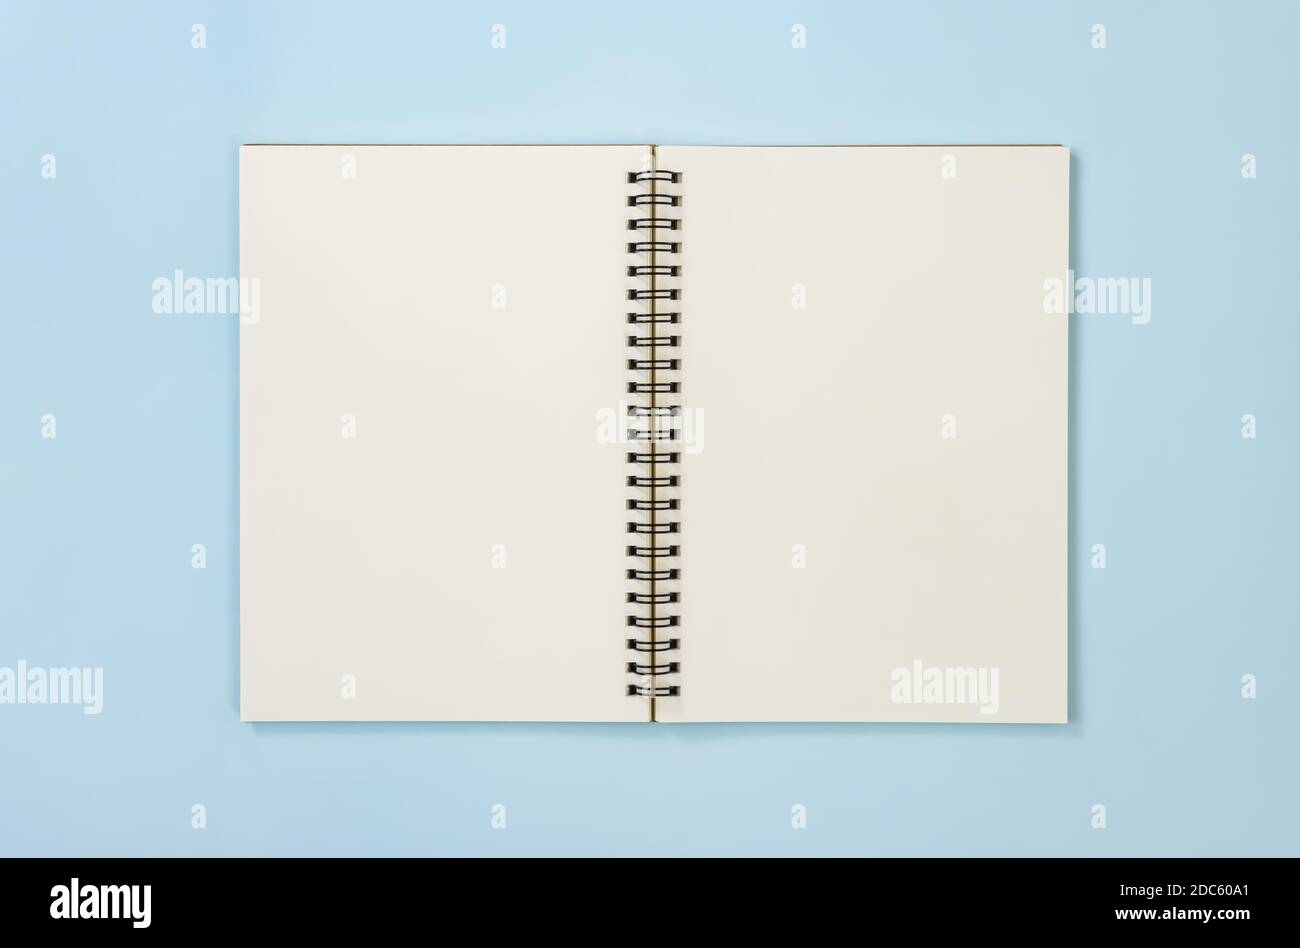 Tischchen Spiral Notizbuch oder Feder Notizbuch Mockup in ungefüttert Geben Sie auf Mittelrahmen auf blauem Pastell minimalistischen Hintergrund Stockfoto